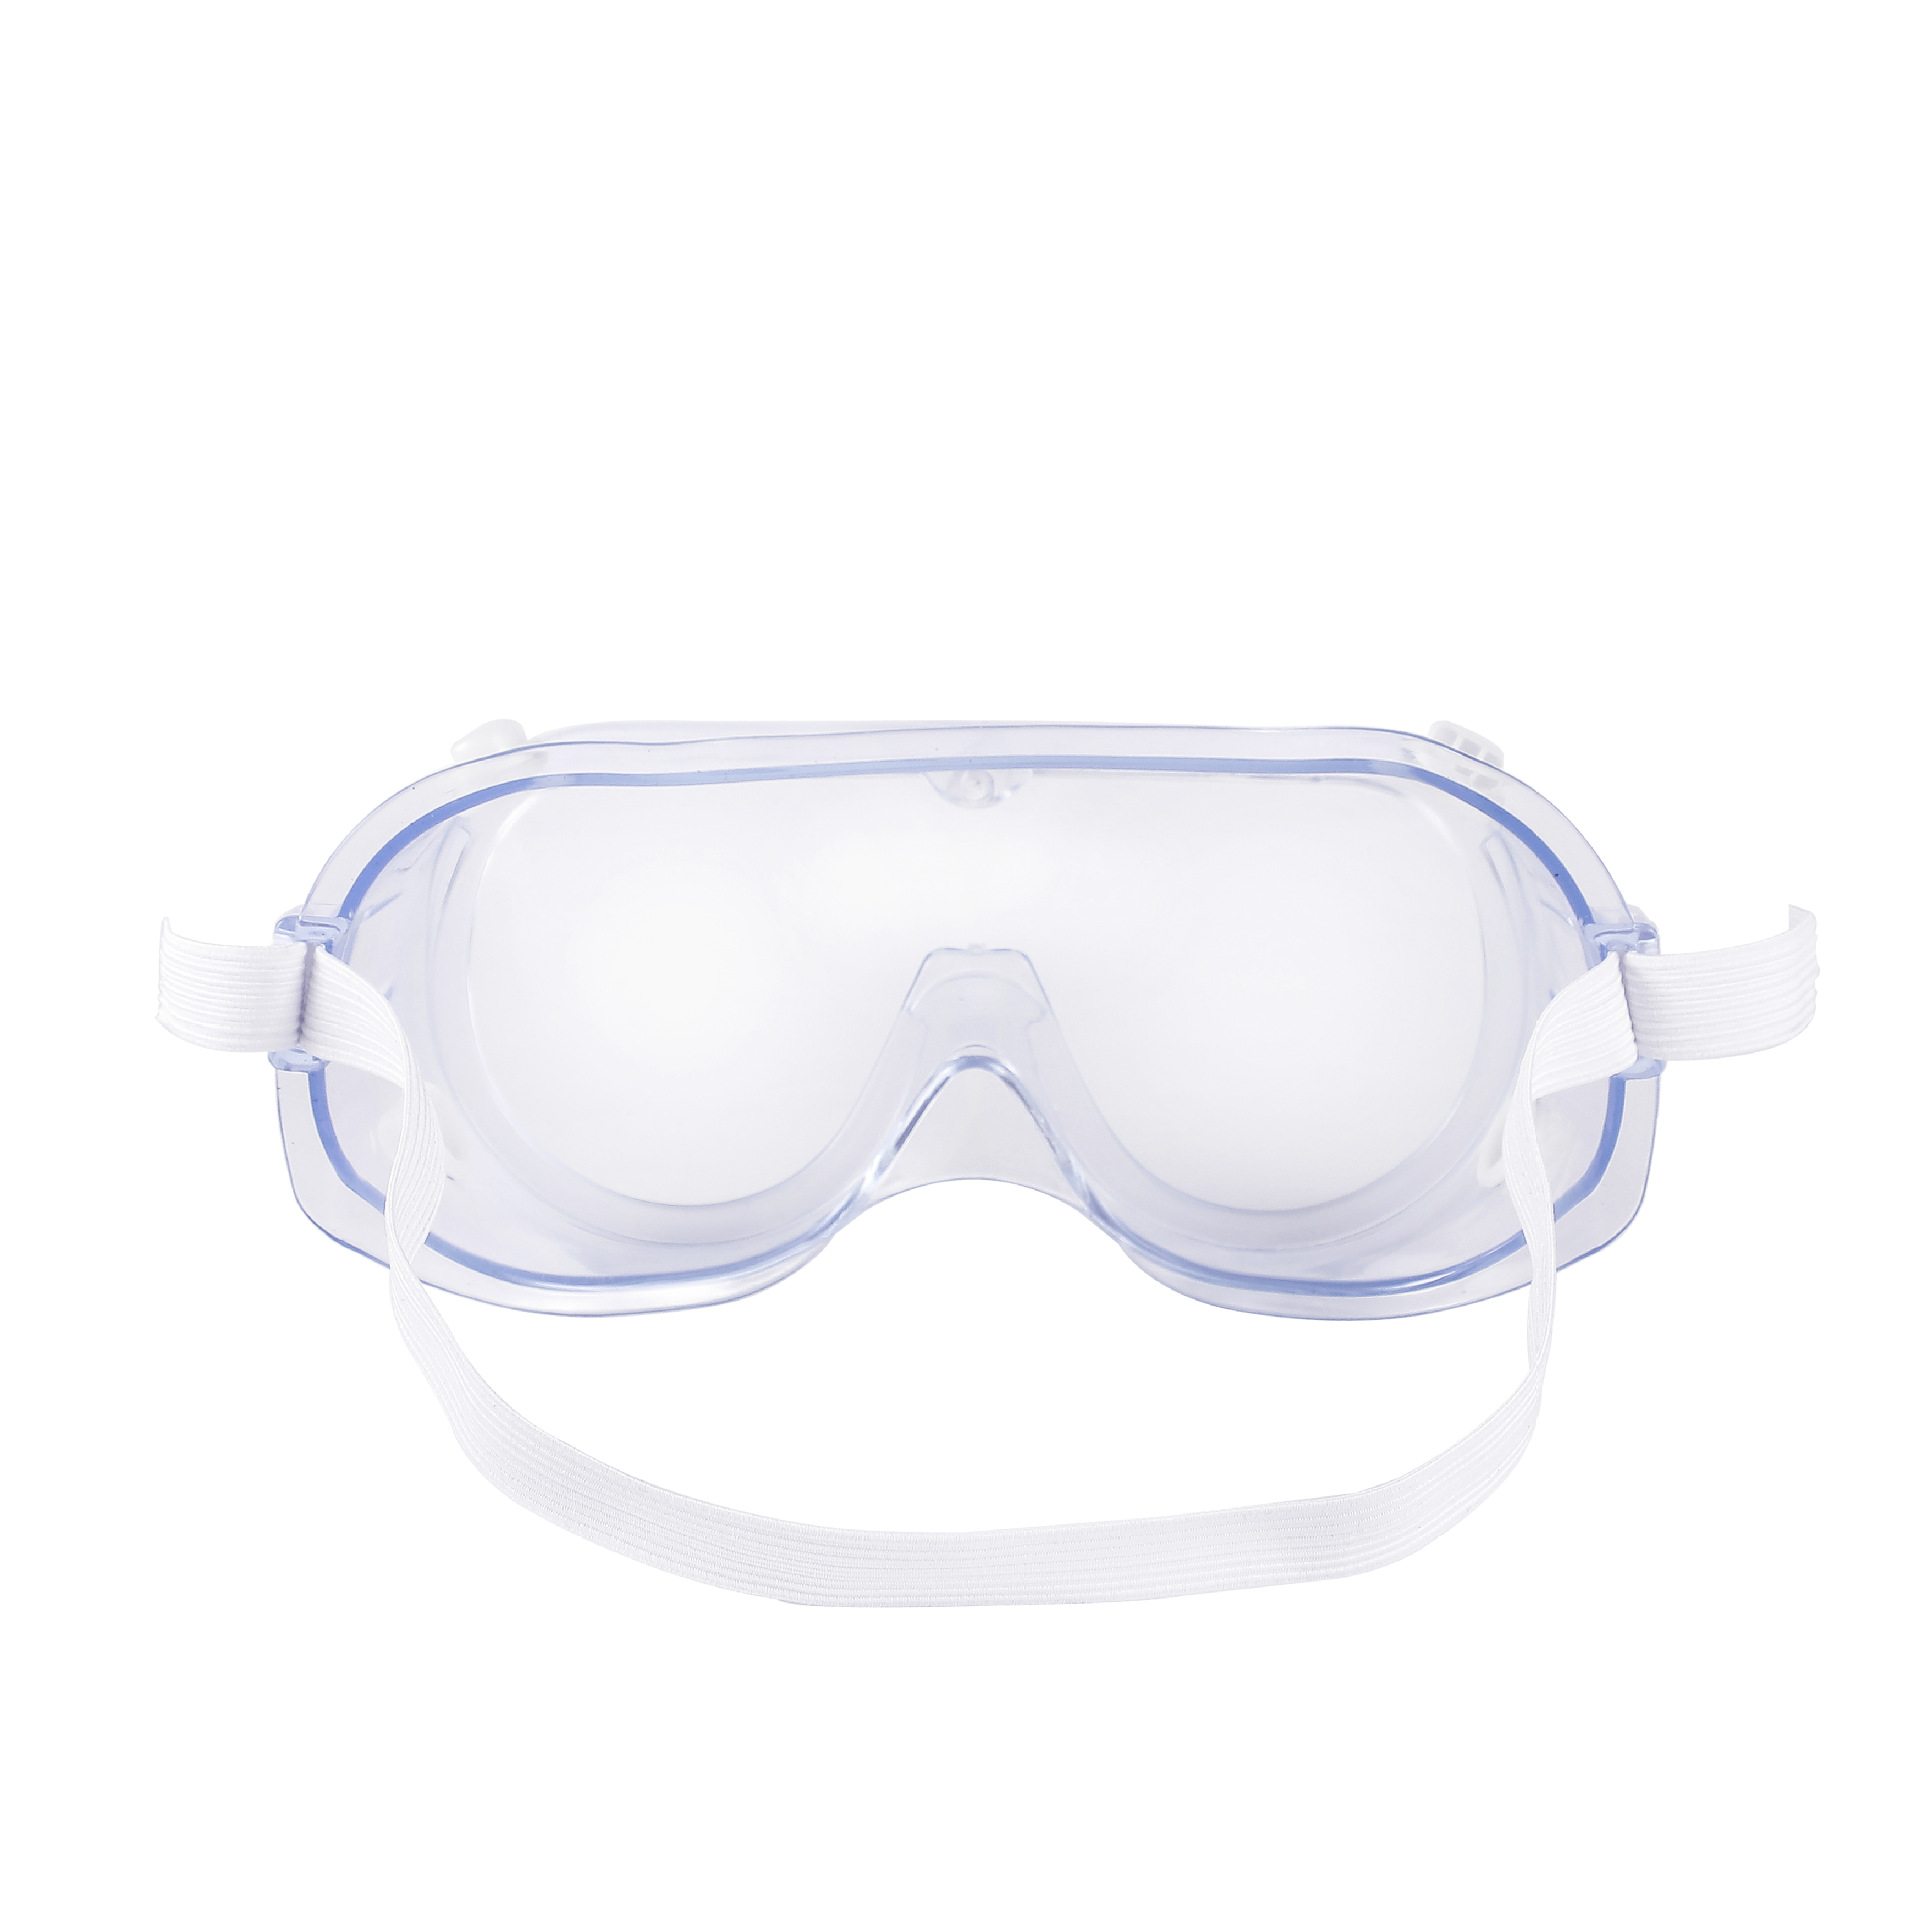 Multifunktionale Anti-Sand-Schutzbrille Schutzbrille Arbeitslabor Brille Schutzbrille Anti-Splash Augenschutzbrille